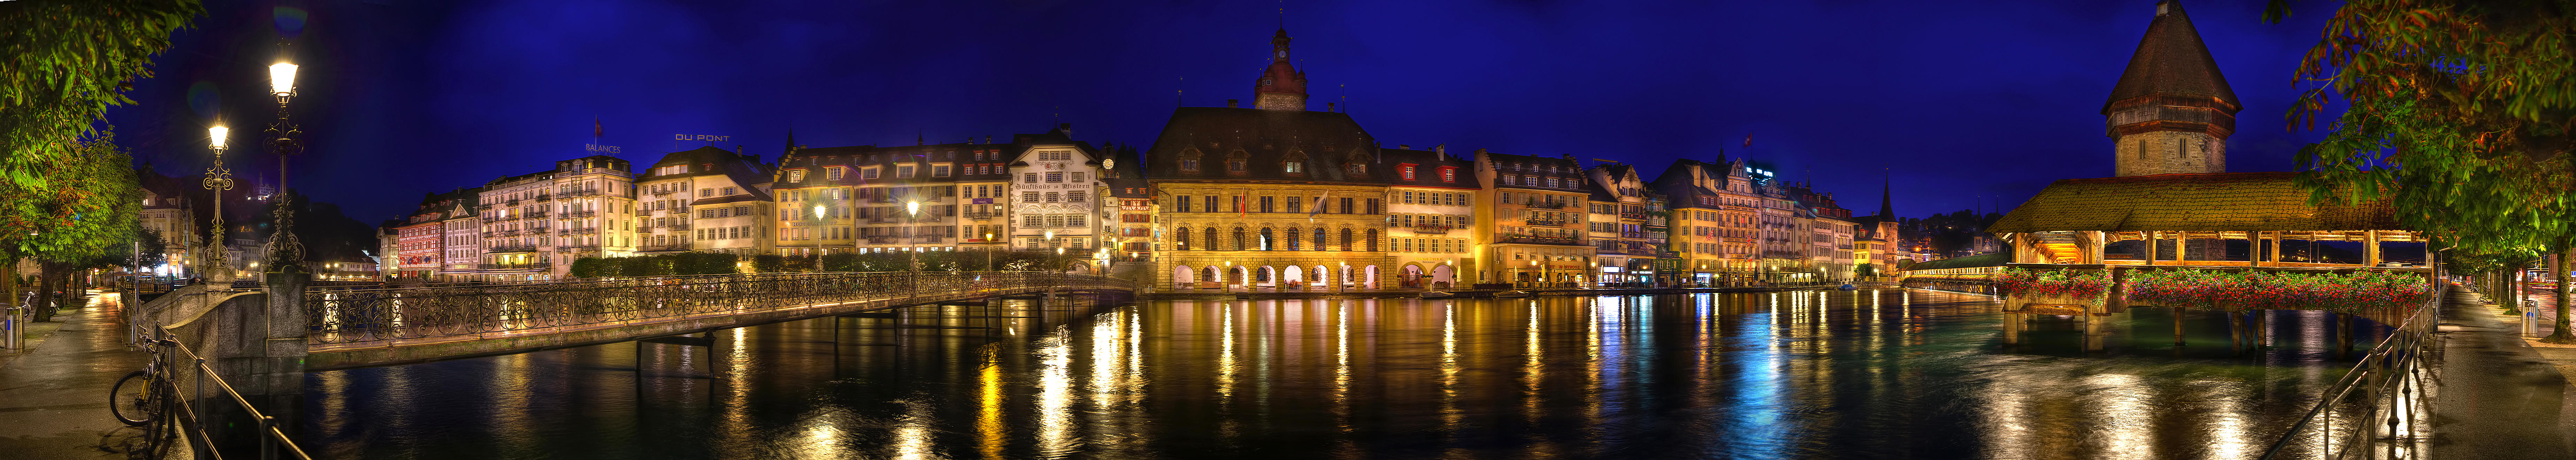 Фото бесплатно город, Швейцария, панорама